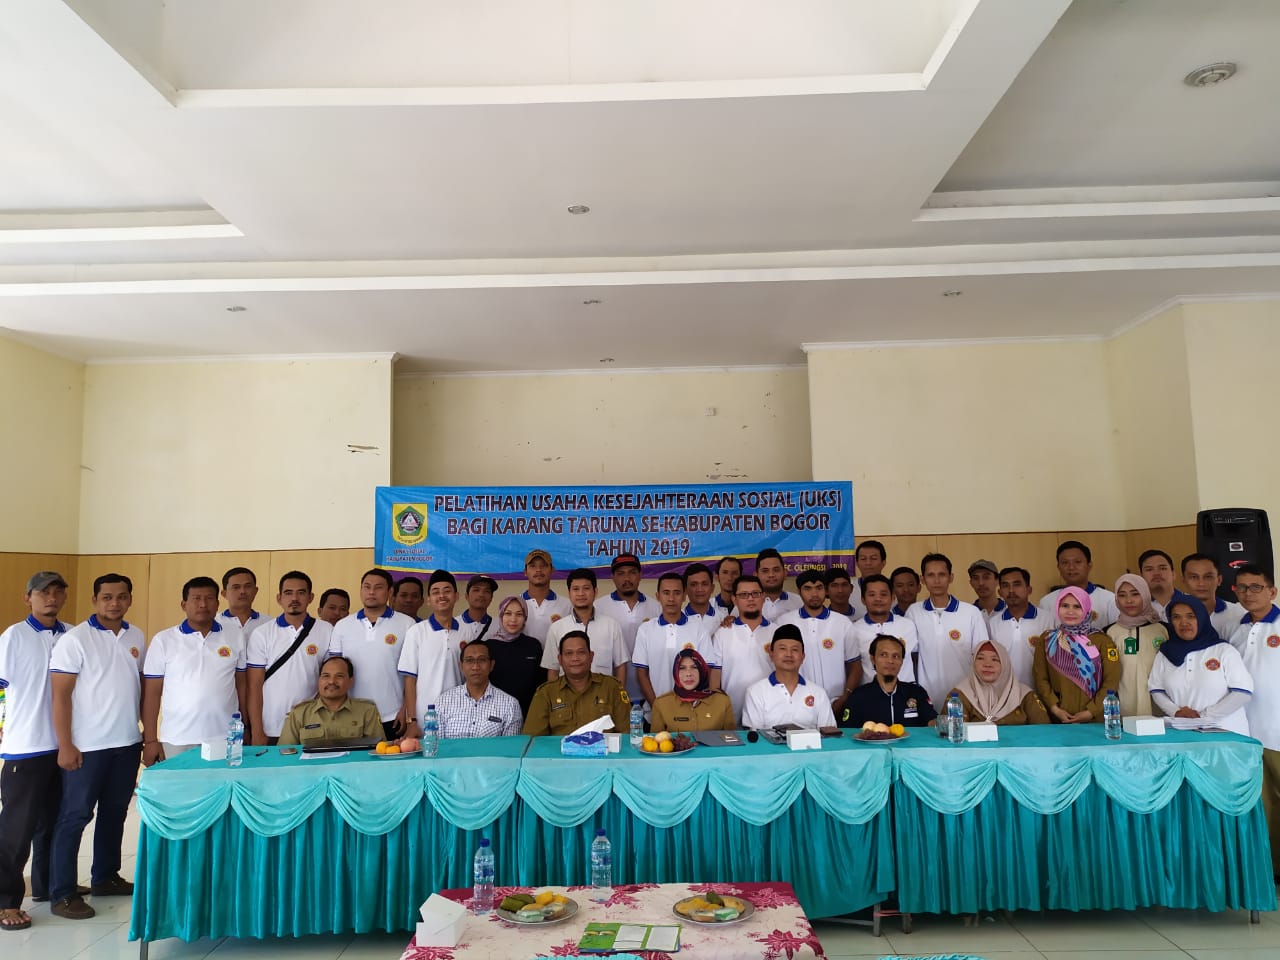 Pelatihan Usaha Kesejahteraan Sosial (UKS) Bagi Karang Taruna Se-Kabupaten Bogor Tahun 2019